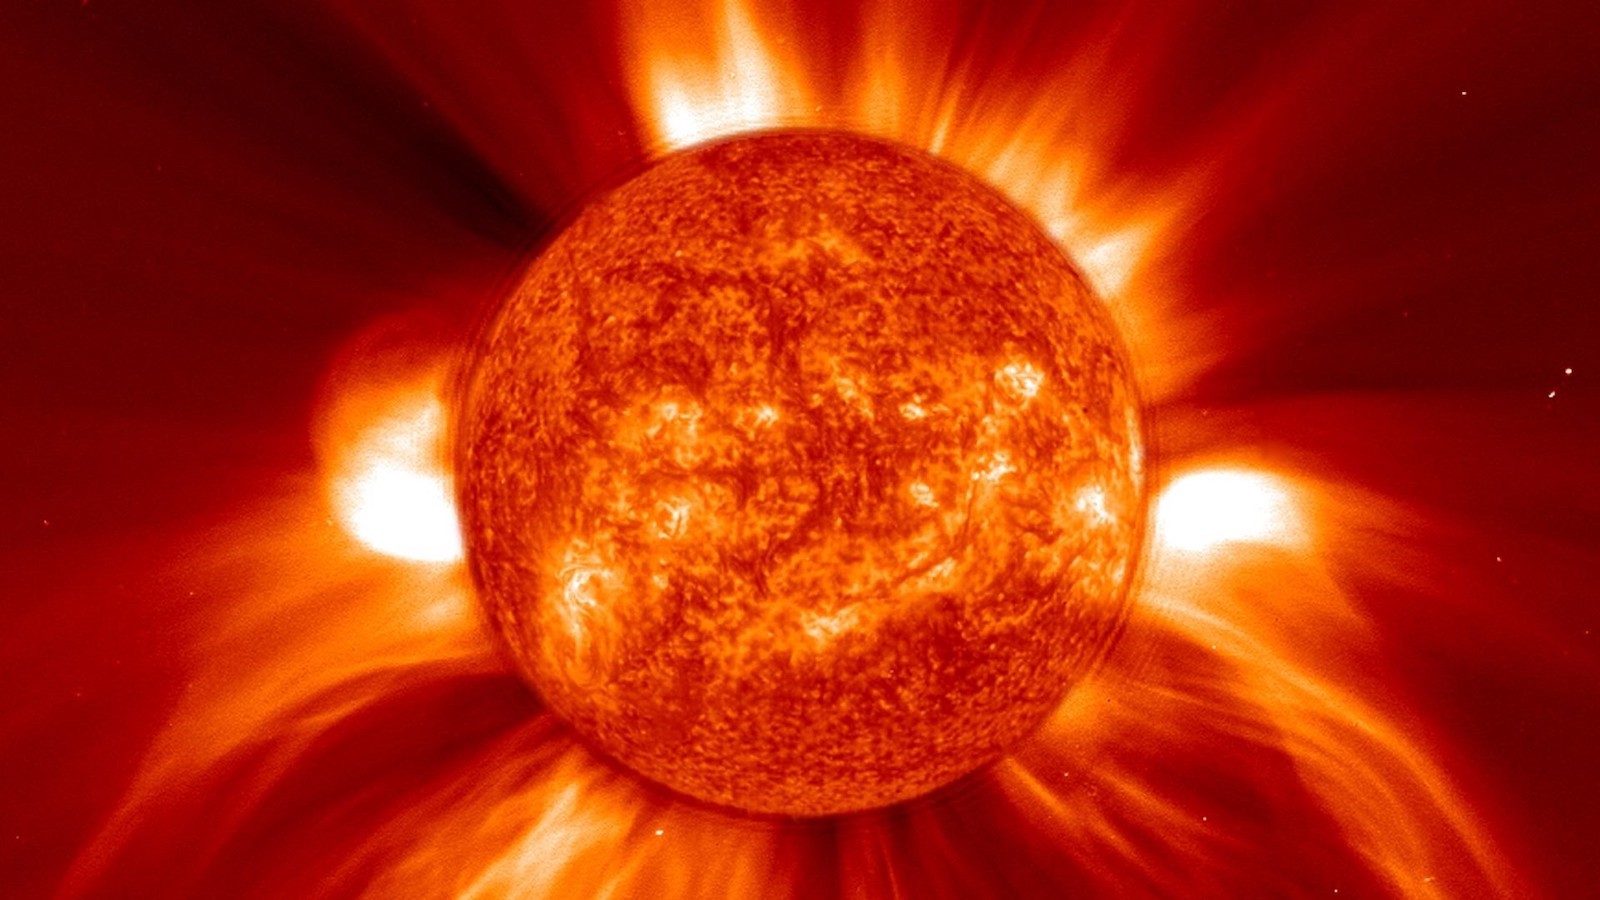 W stronę Ziemi zmierzają obłoki plazmy wyrzuconej ze Słońca. To może być burzliwa noc